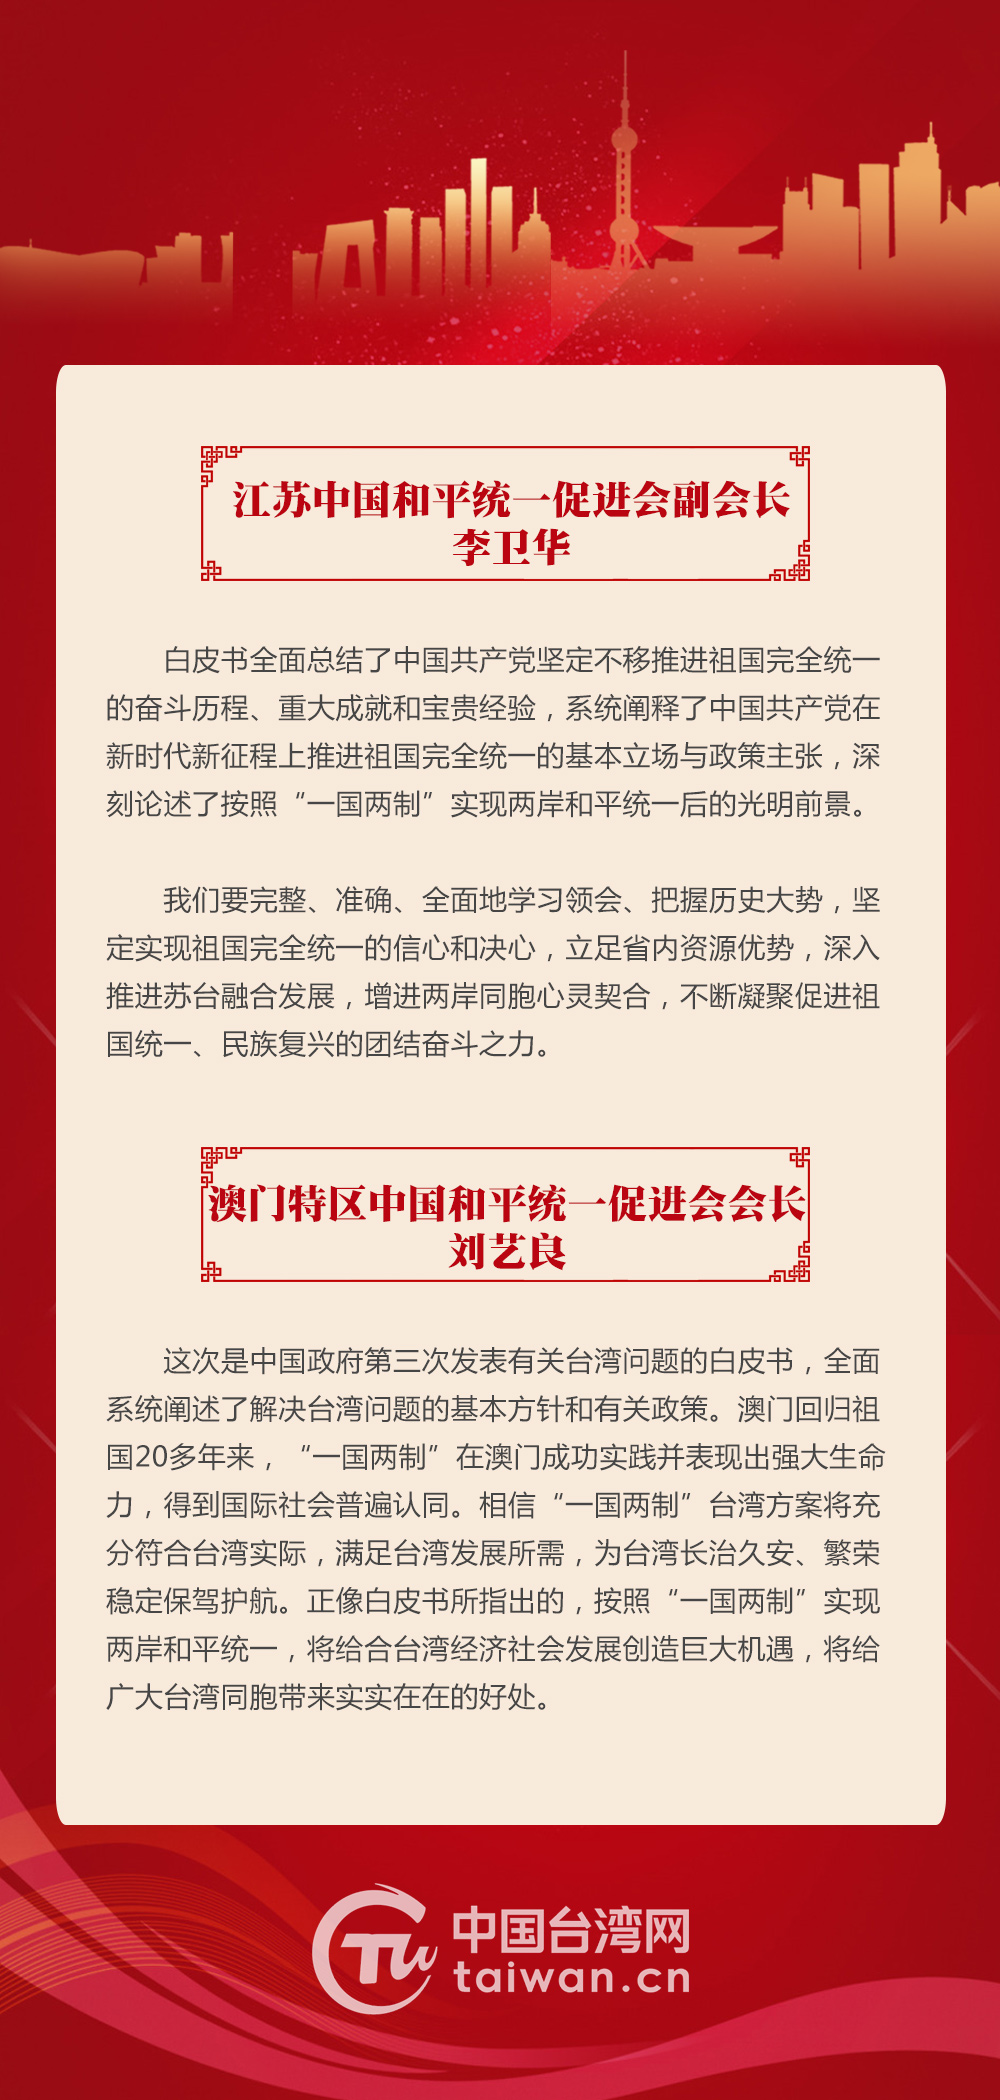 台胞热议《台湾问题与新时代中国统一事业》白皮书